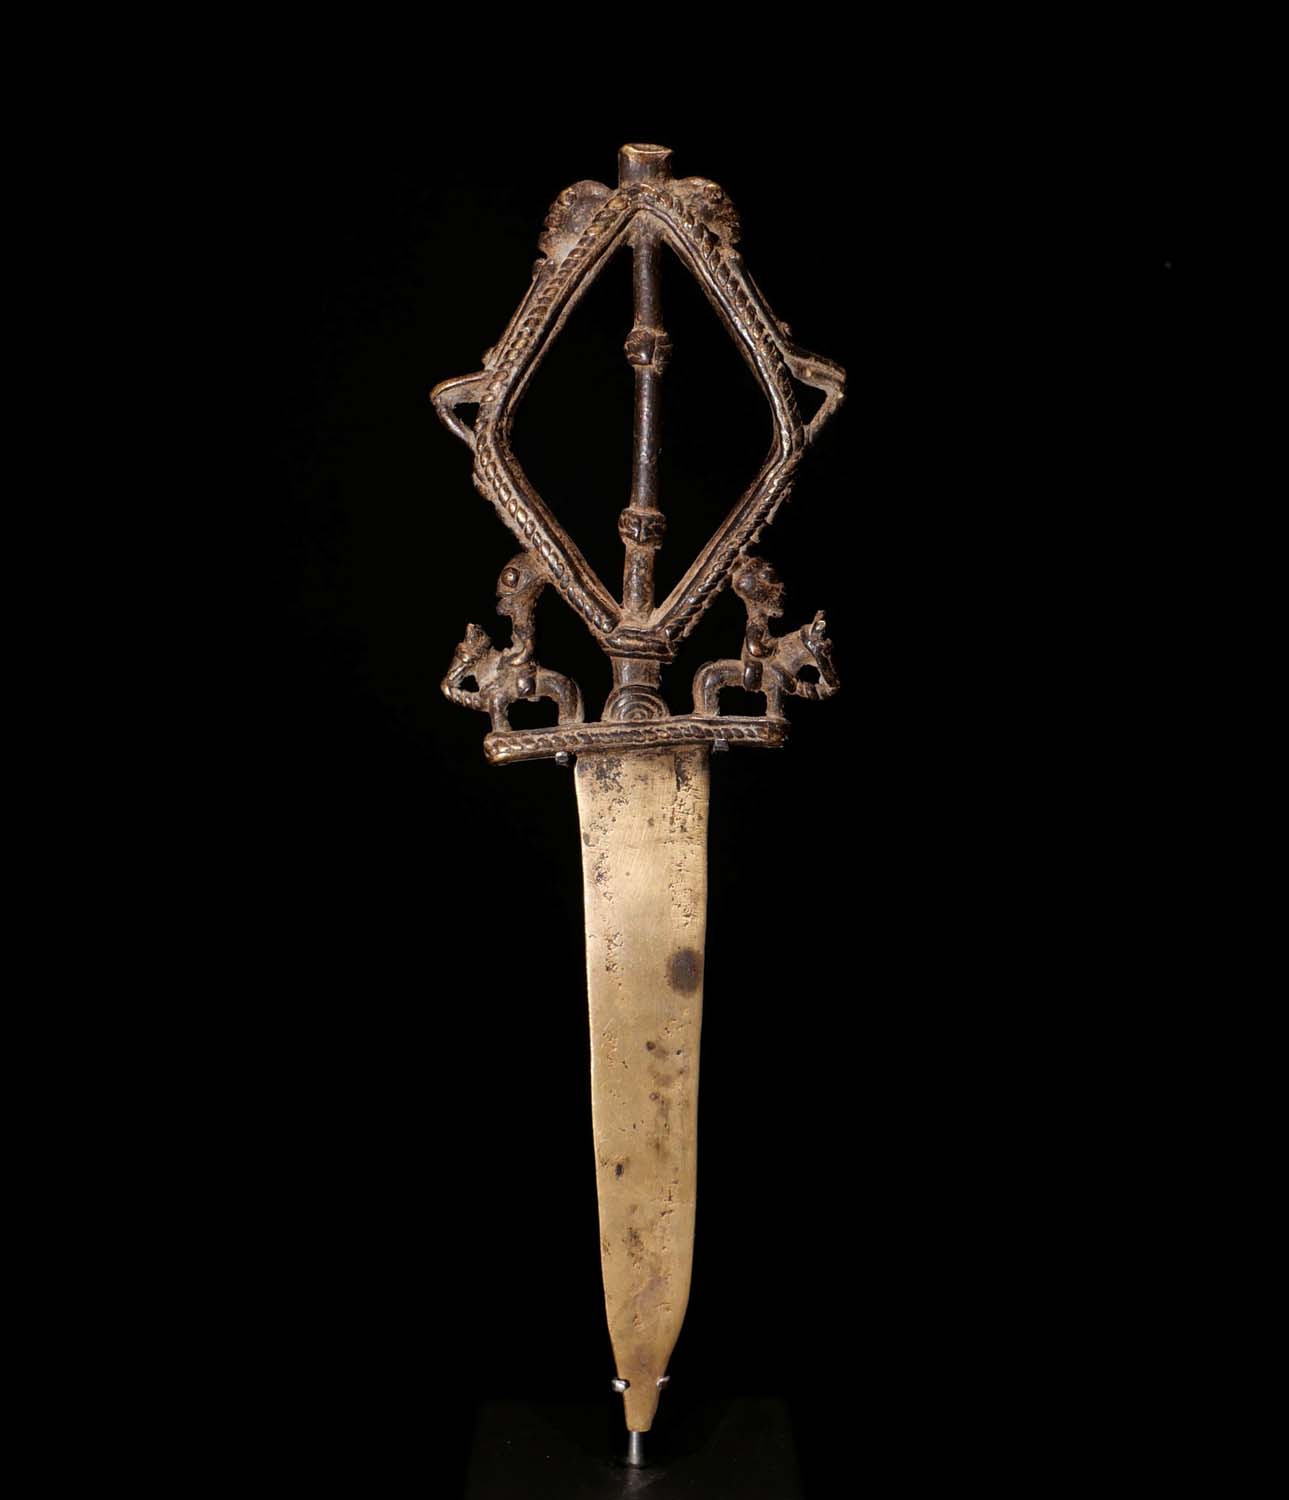 Zeremonielles Messer. Griff aus Bronze, gegossen in der verlorenen Form. Dogon / Mali. H 28 cm.